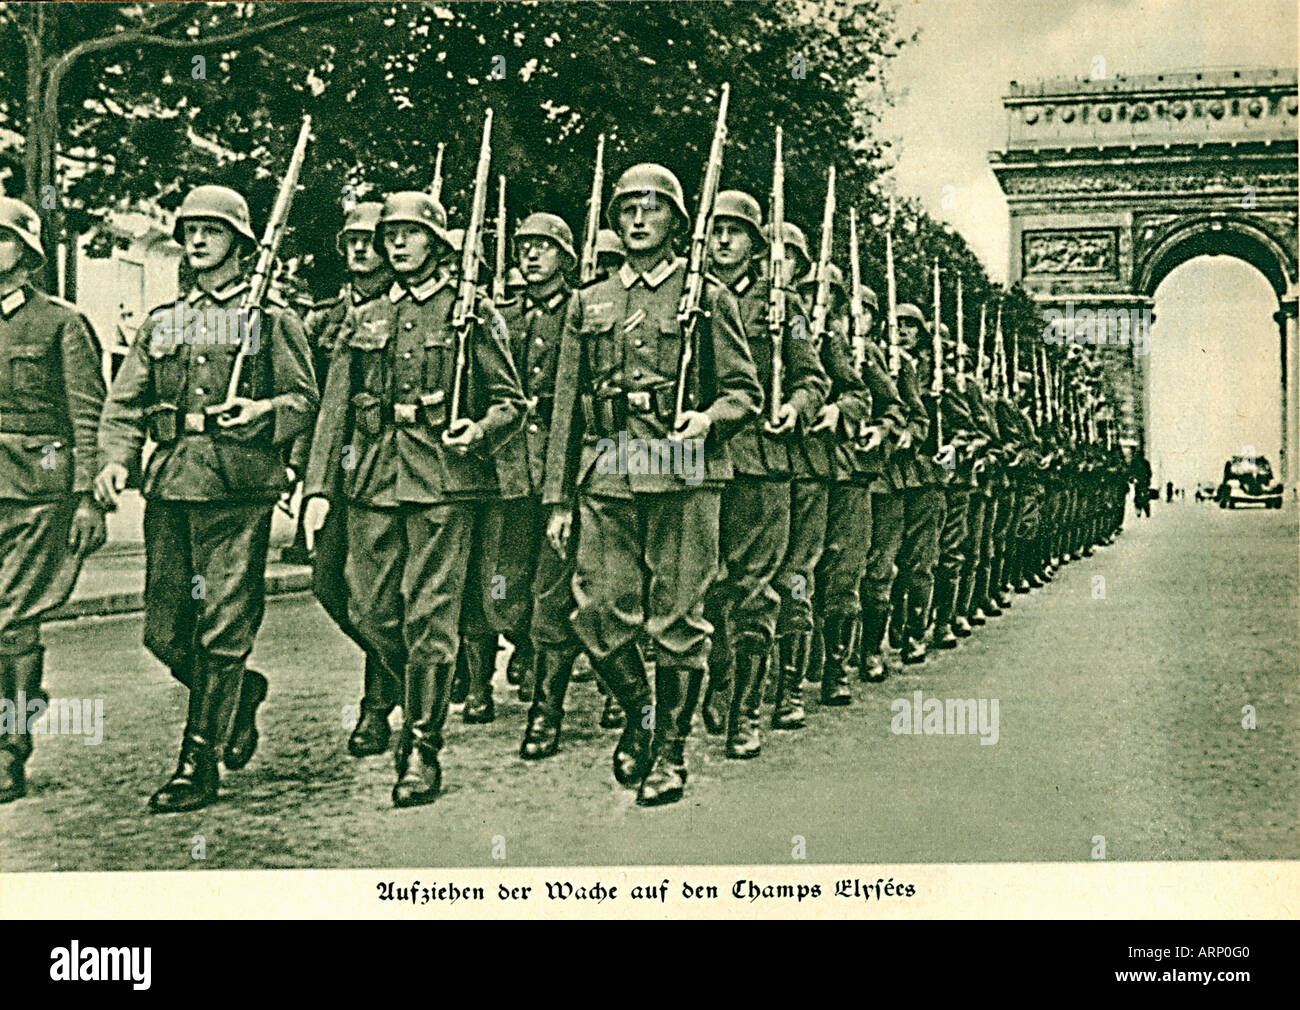 Truppe tedesche in Champs Elysees 1940 foto di propaganda della Wehrmacht marciando a Parigi Foto Stock